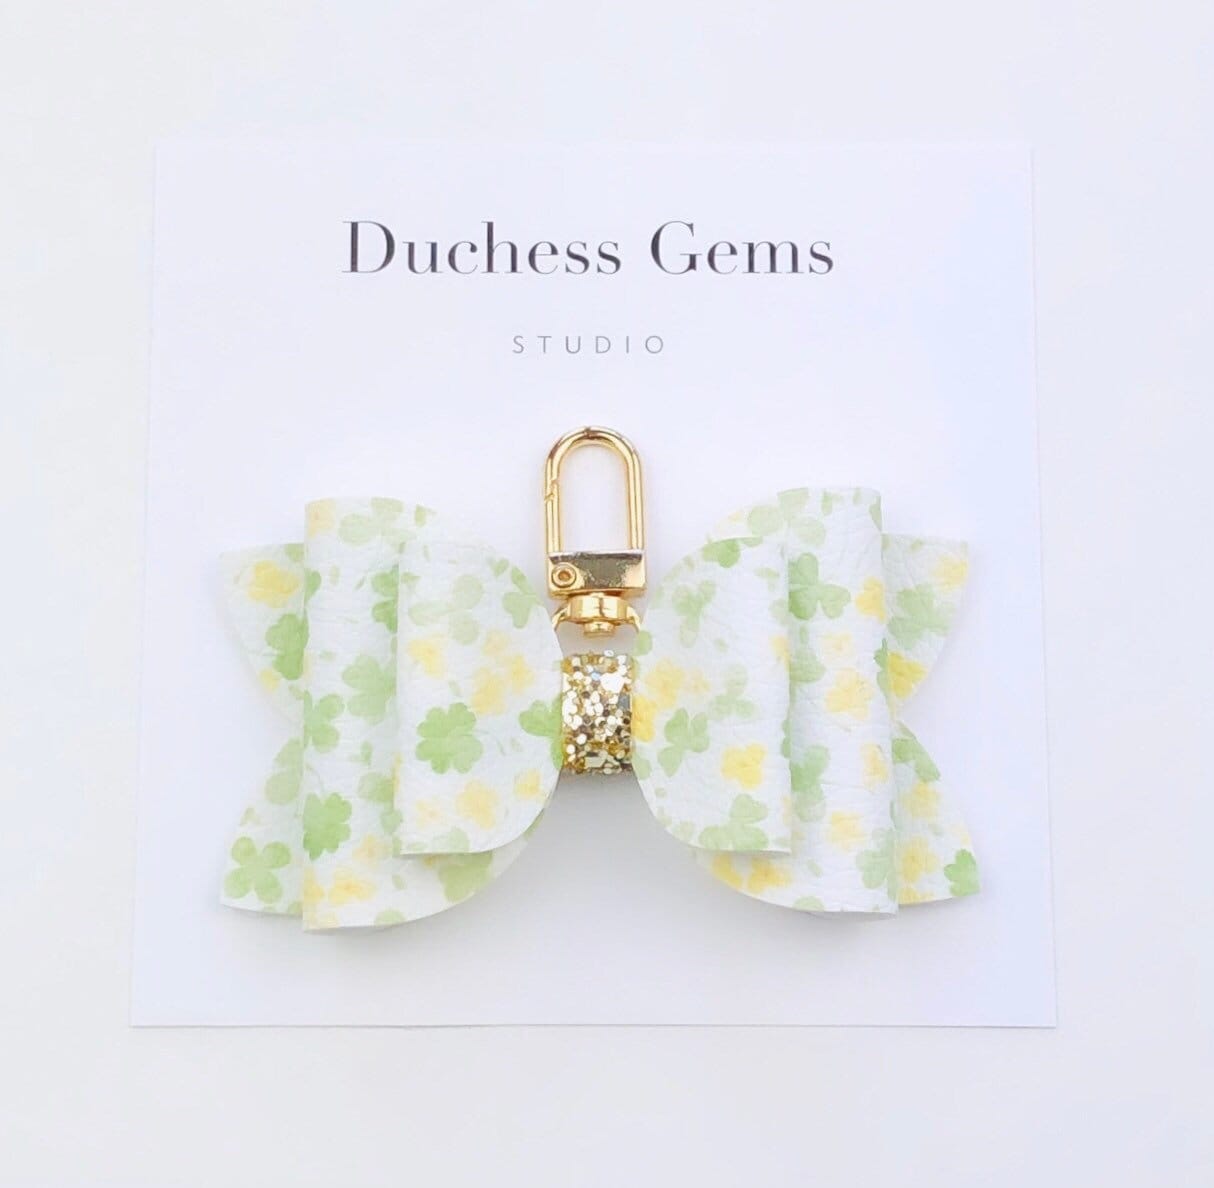 Green Shamrock Schleife Tasche Charm, Gelb Floral Schlüsselanhänger Charm von DuchessGemsStudio